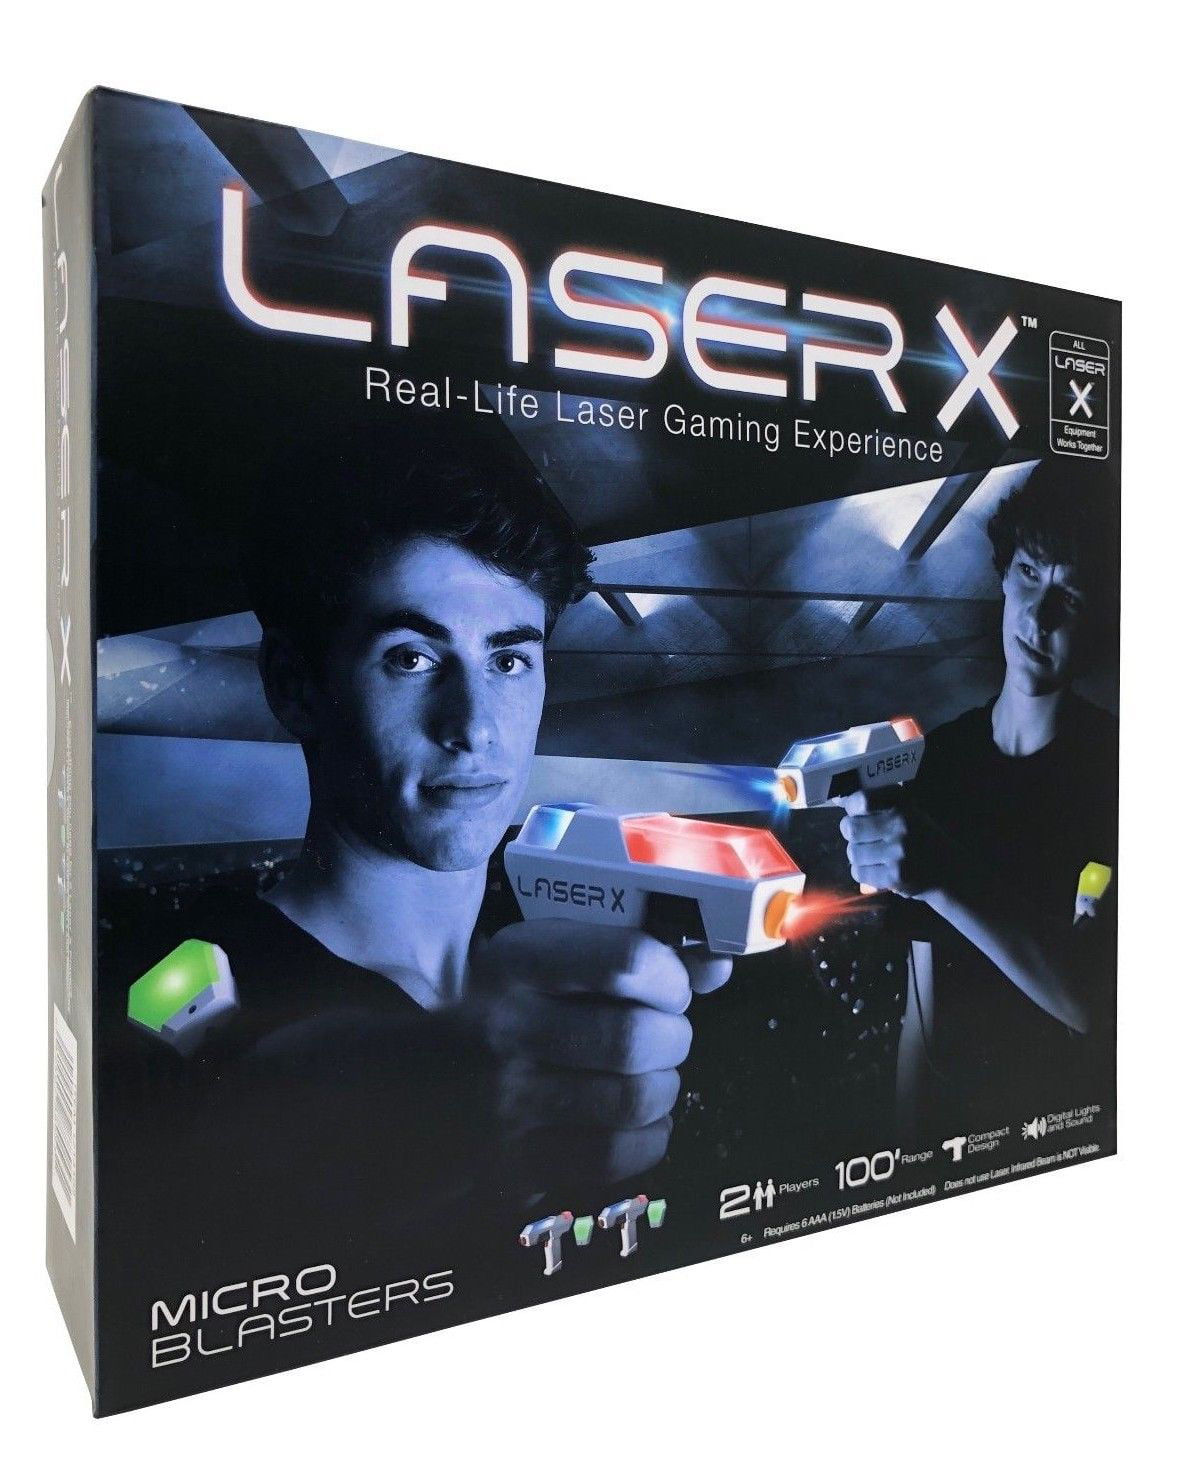 Laser X Evolution Micro Blaster to Blaster by Laser X at Fleet Farm